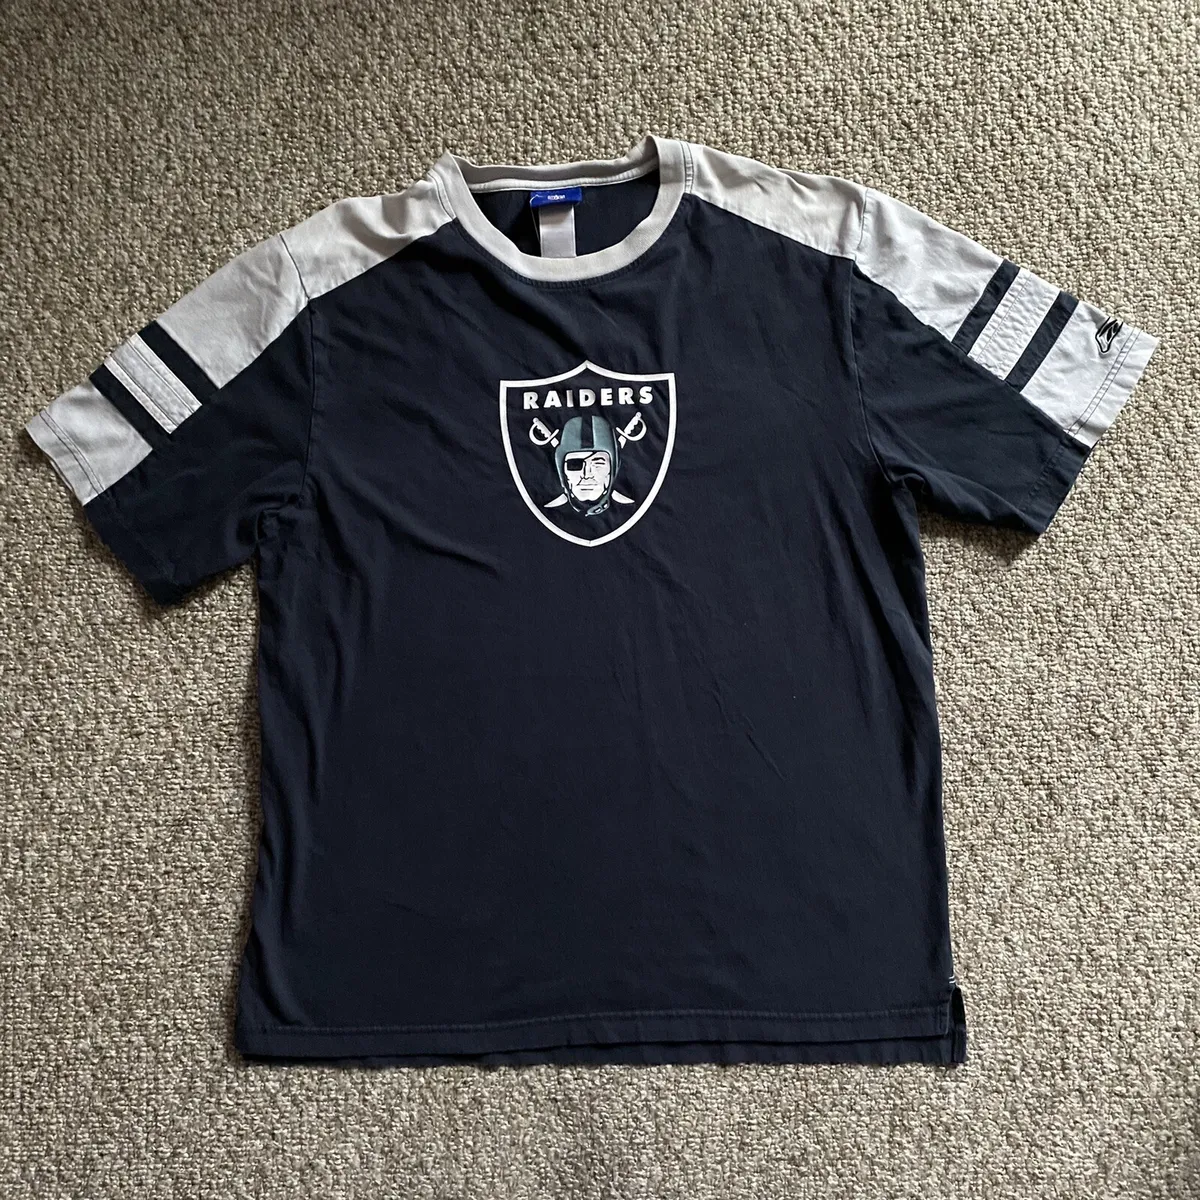 Reebok T Shirt Los Angeles Raiders NFL Mens XL Black Short Sleeve Y2K Retro